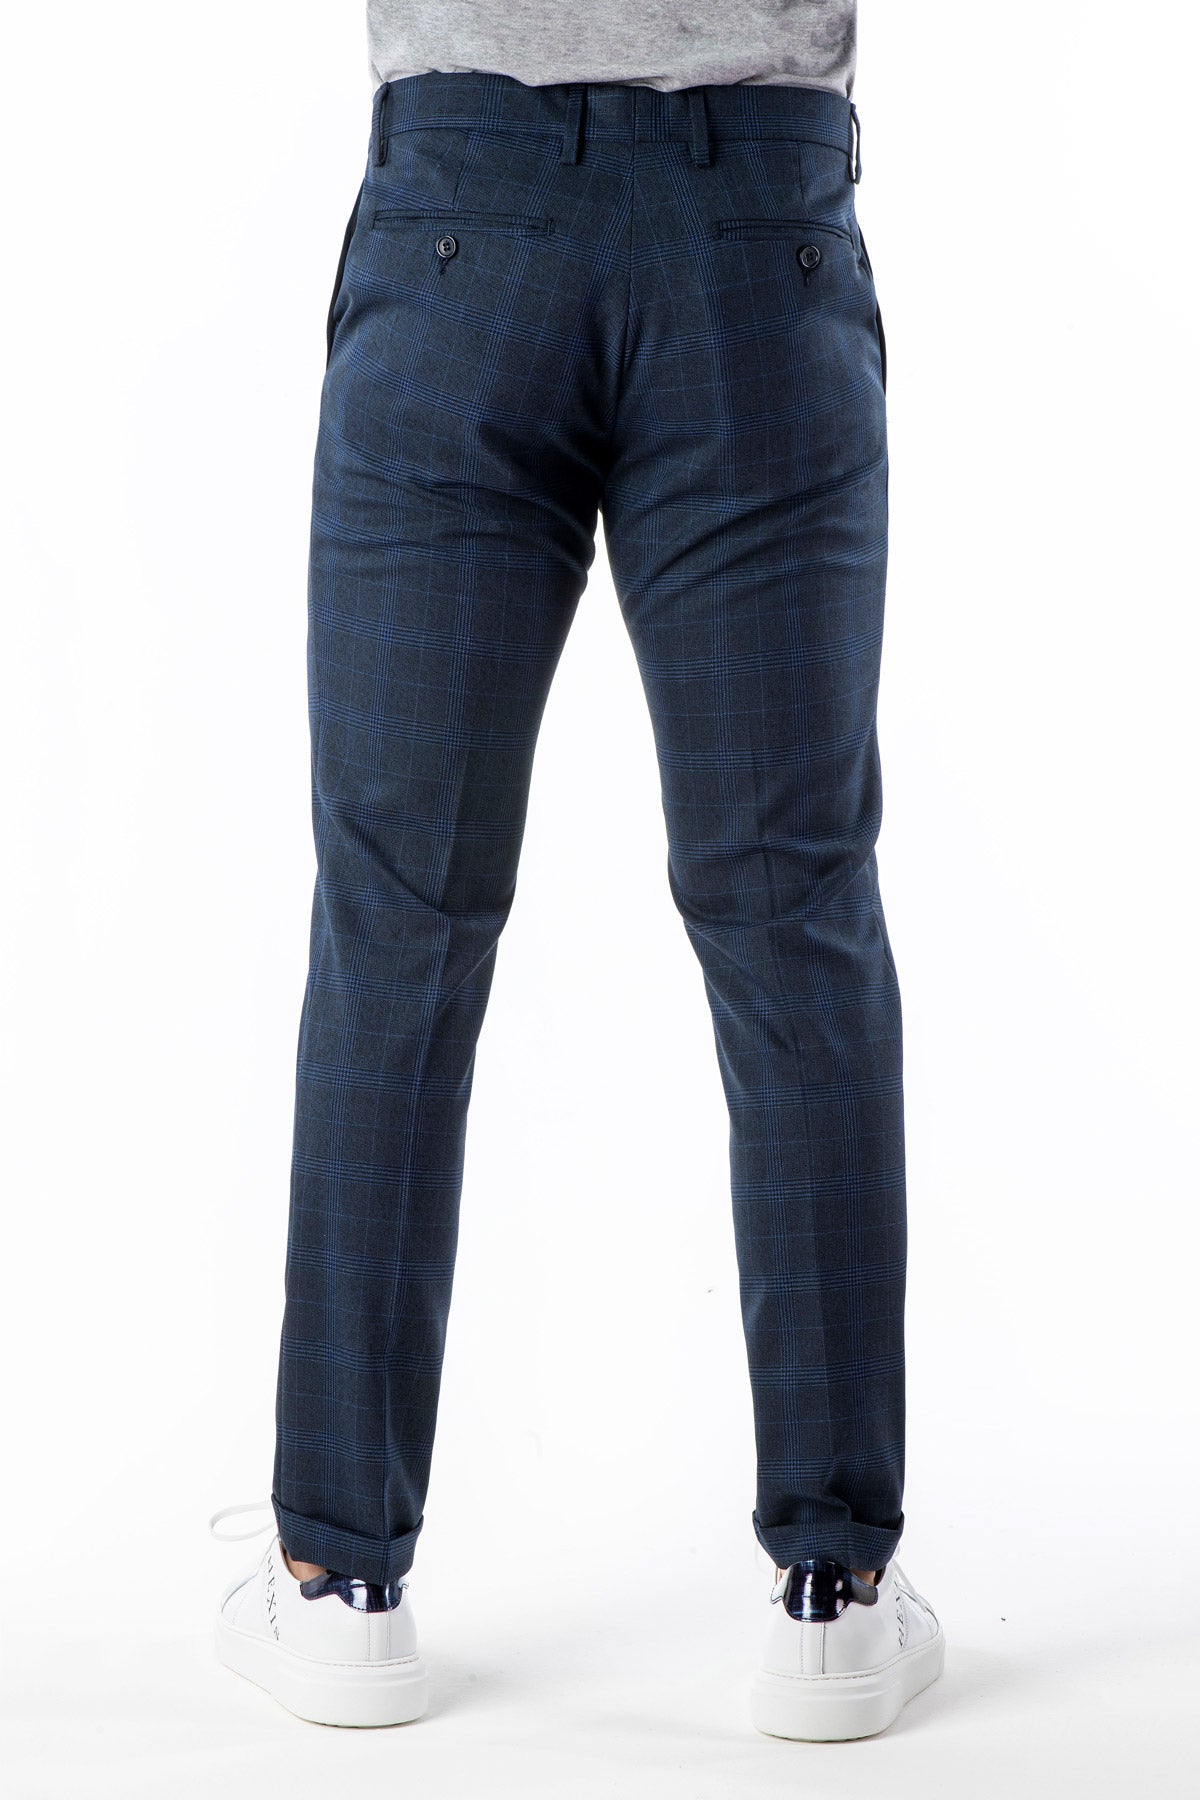 Pantalone stretch invernale quadri blu